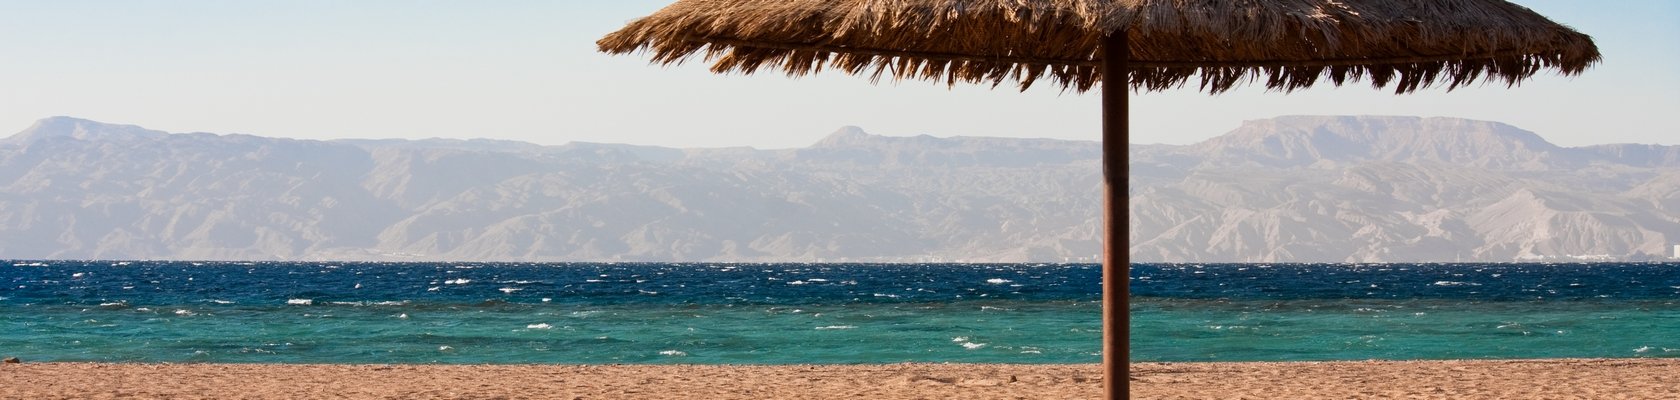 Aqaba, aan de Rode Zee